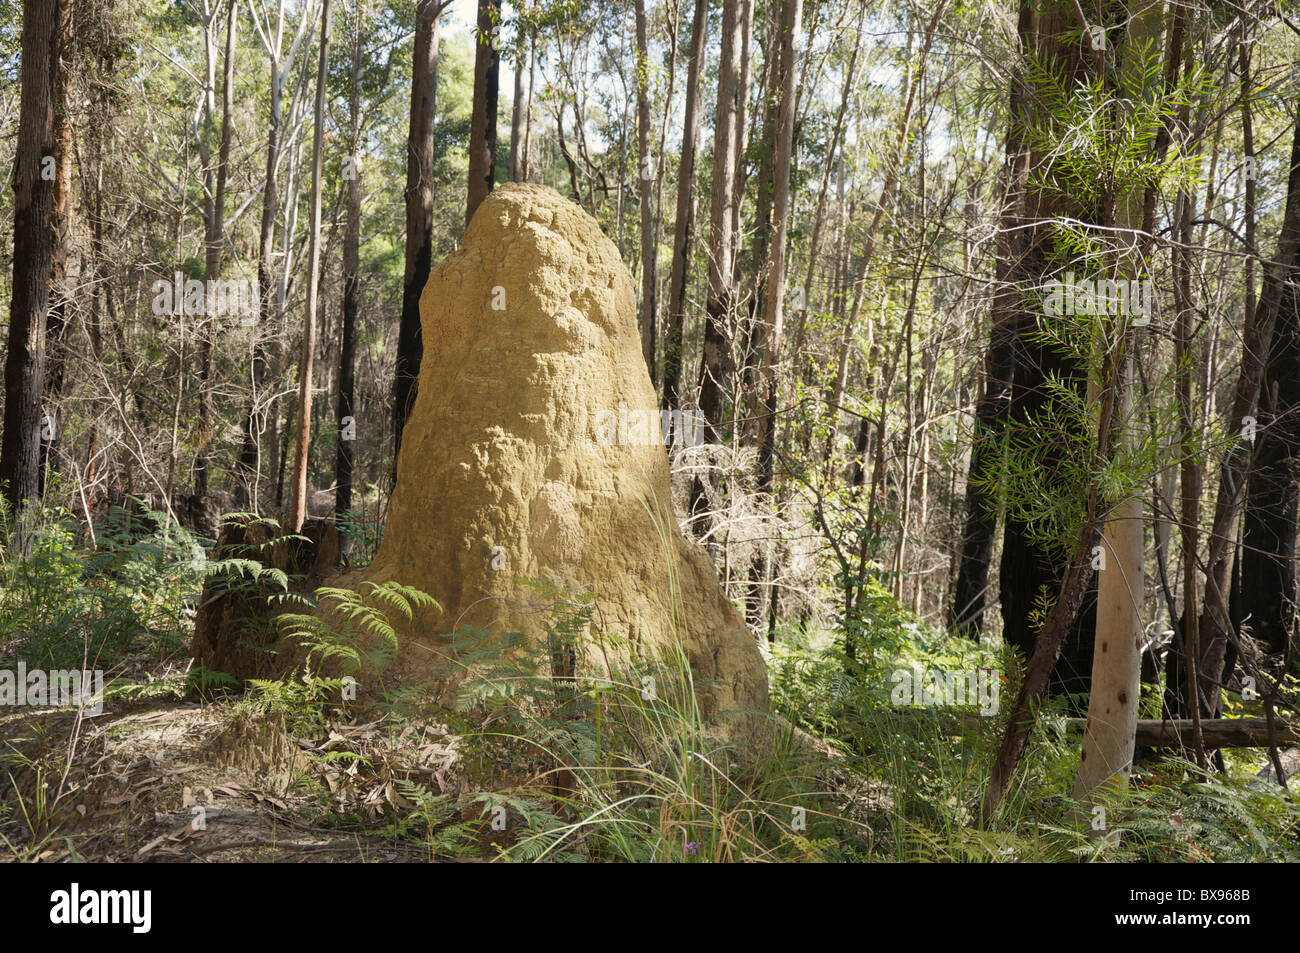 Colonie de termite nest (fourmilière) dans l'ouest de l'Australie situé dans une forêt Banque D'Images